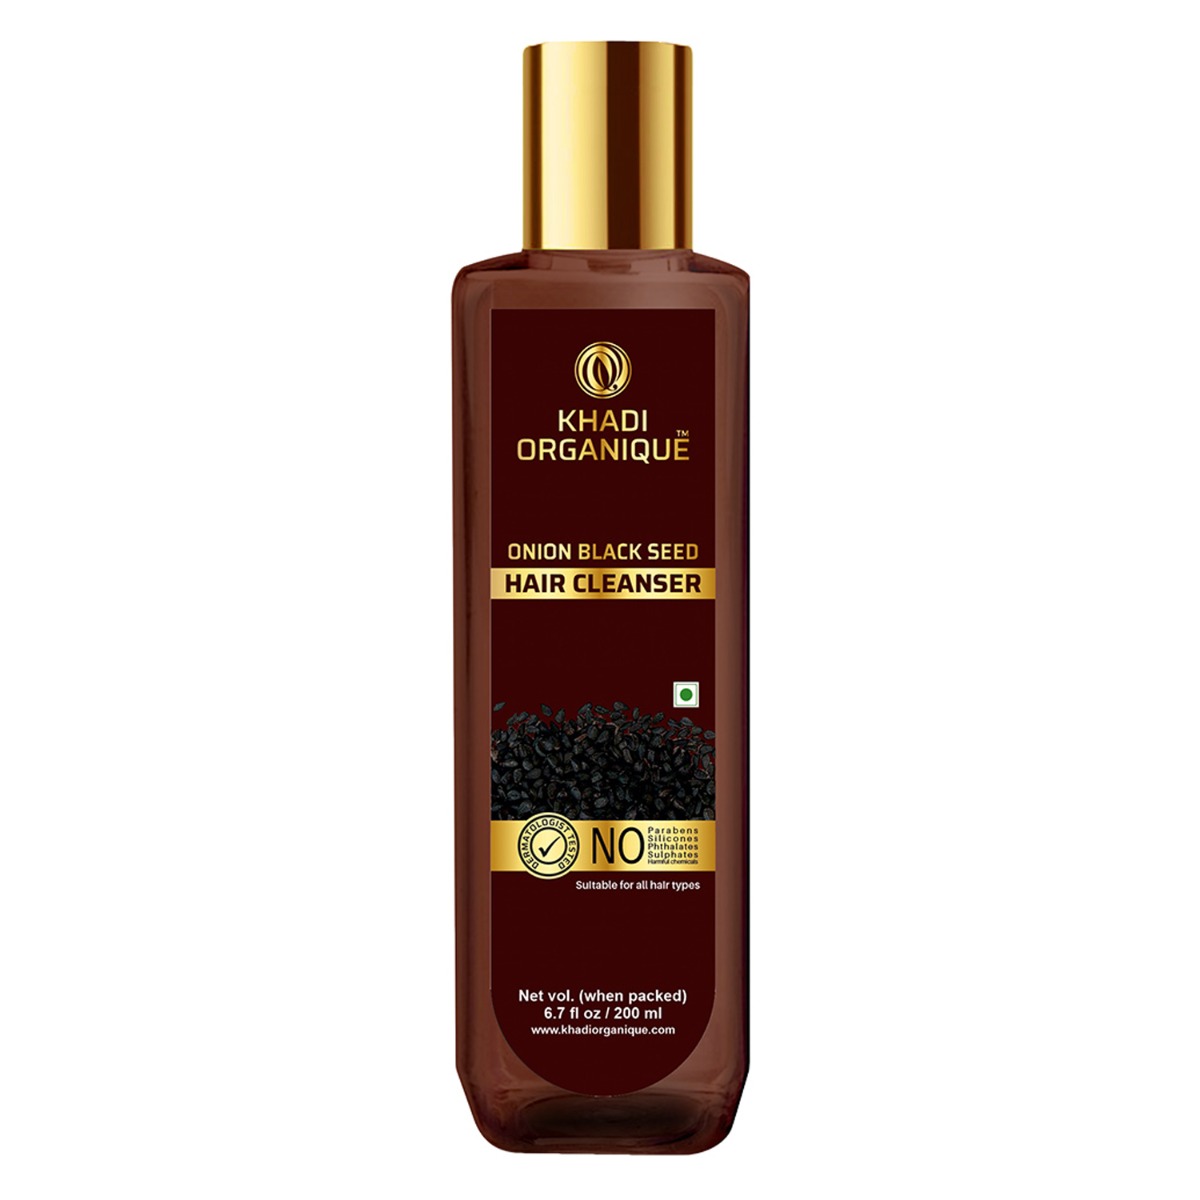 Khadi Organique Onion Black Seed Hair Cleanser / Shampoo, 200ml